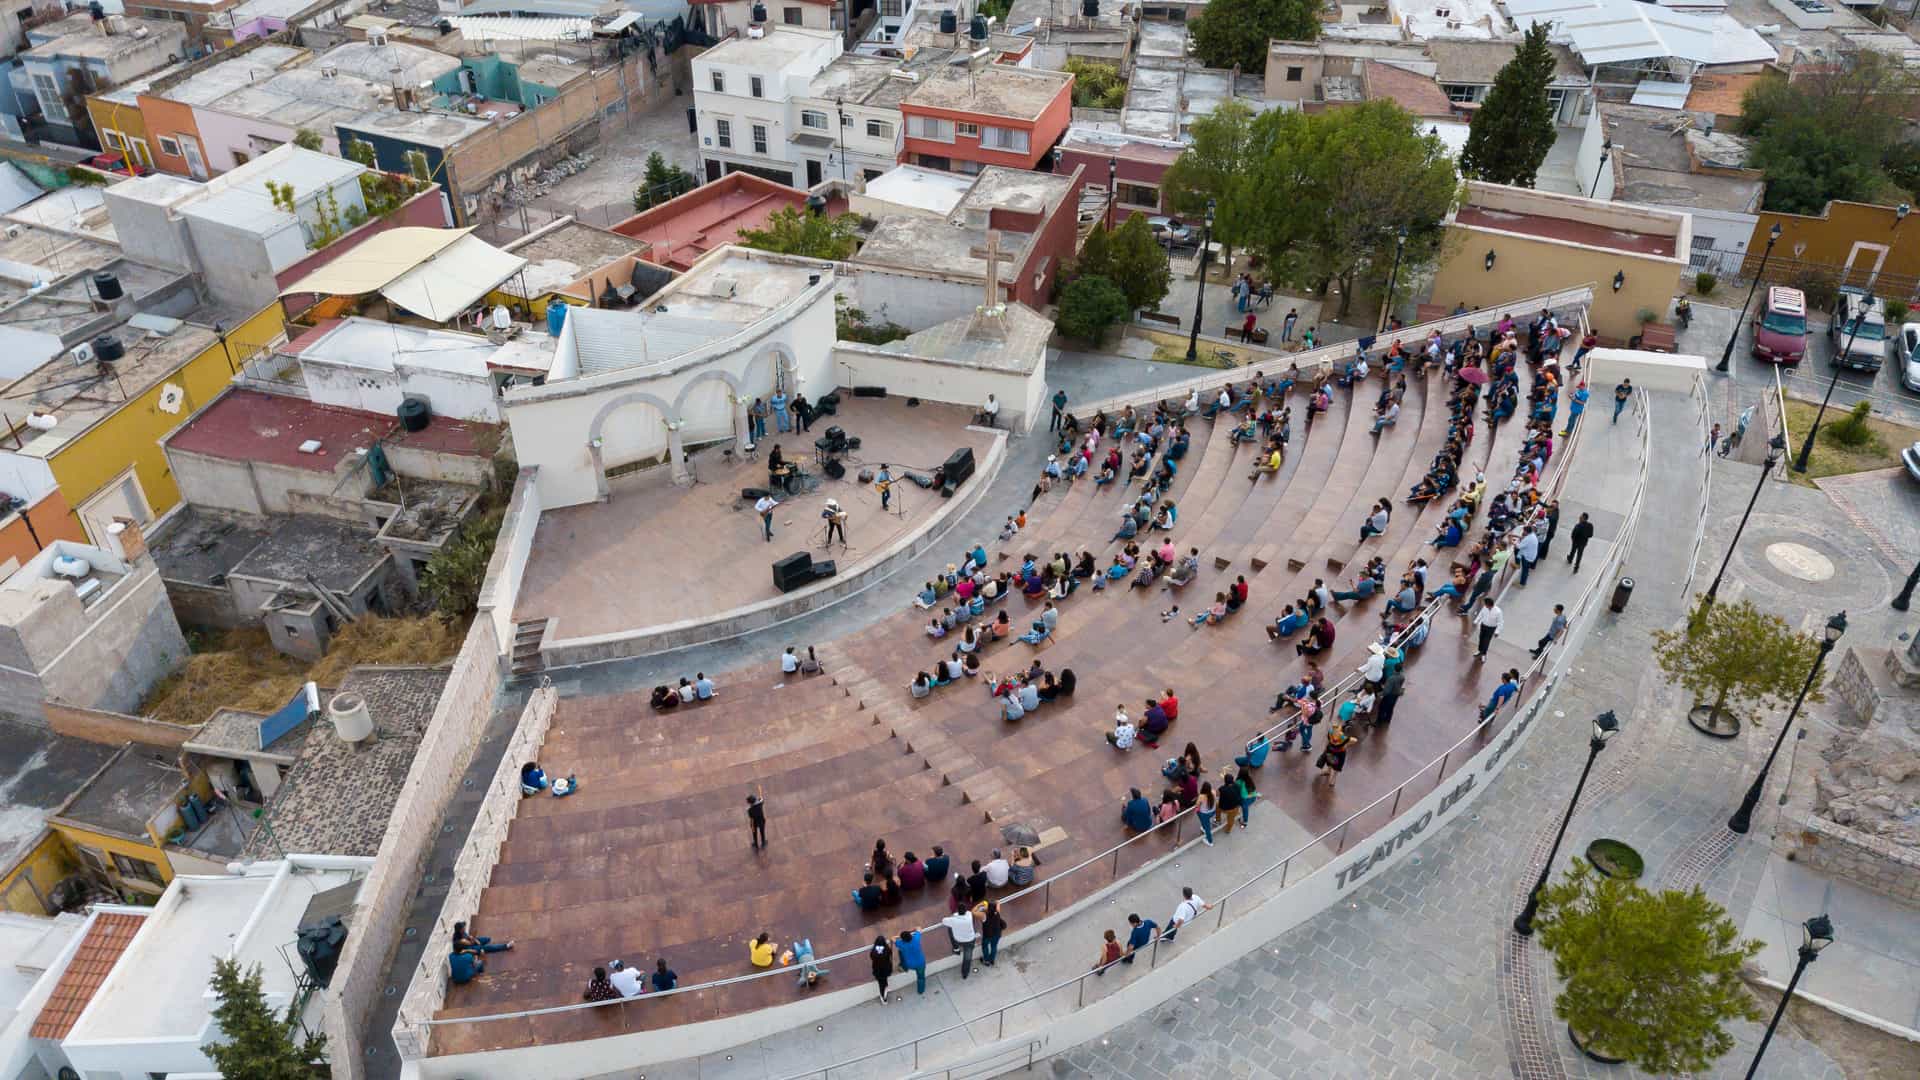 vista aerea de un teatro urbano al aire libre en la ciudad de durango que dispone de sucursales de telcel